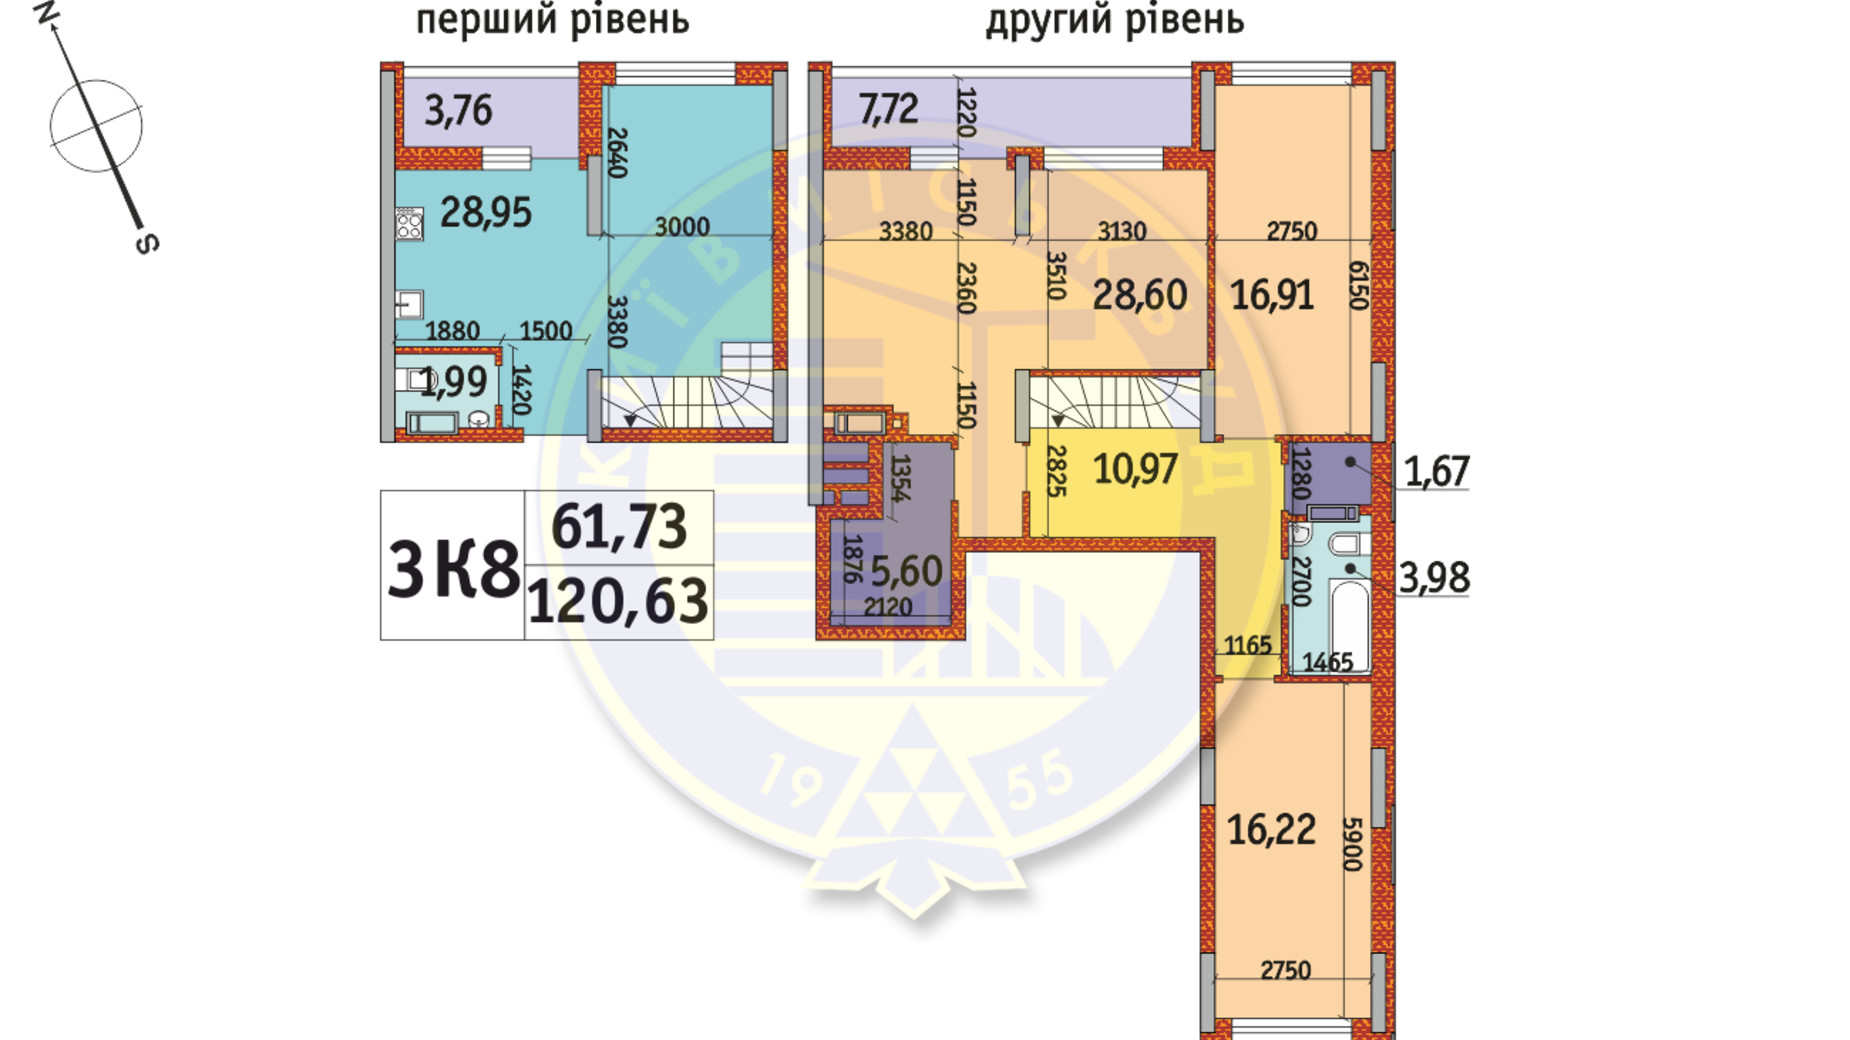 Планировка много­уровневой квартиры в ЖК Отрада 120.63 м², фото 140780